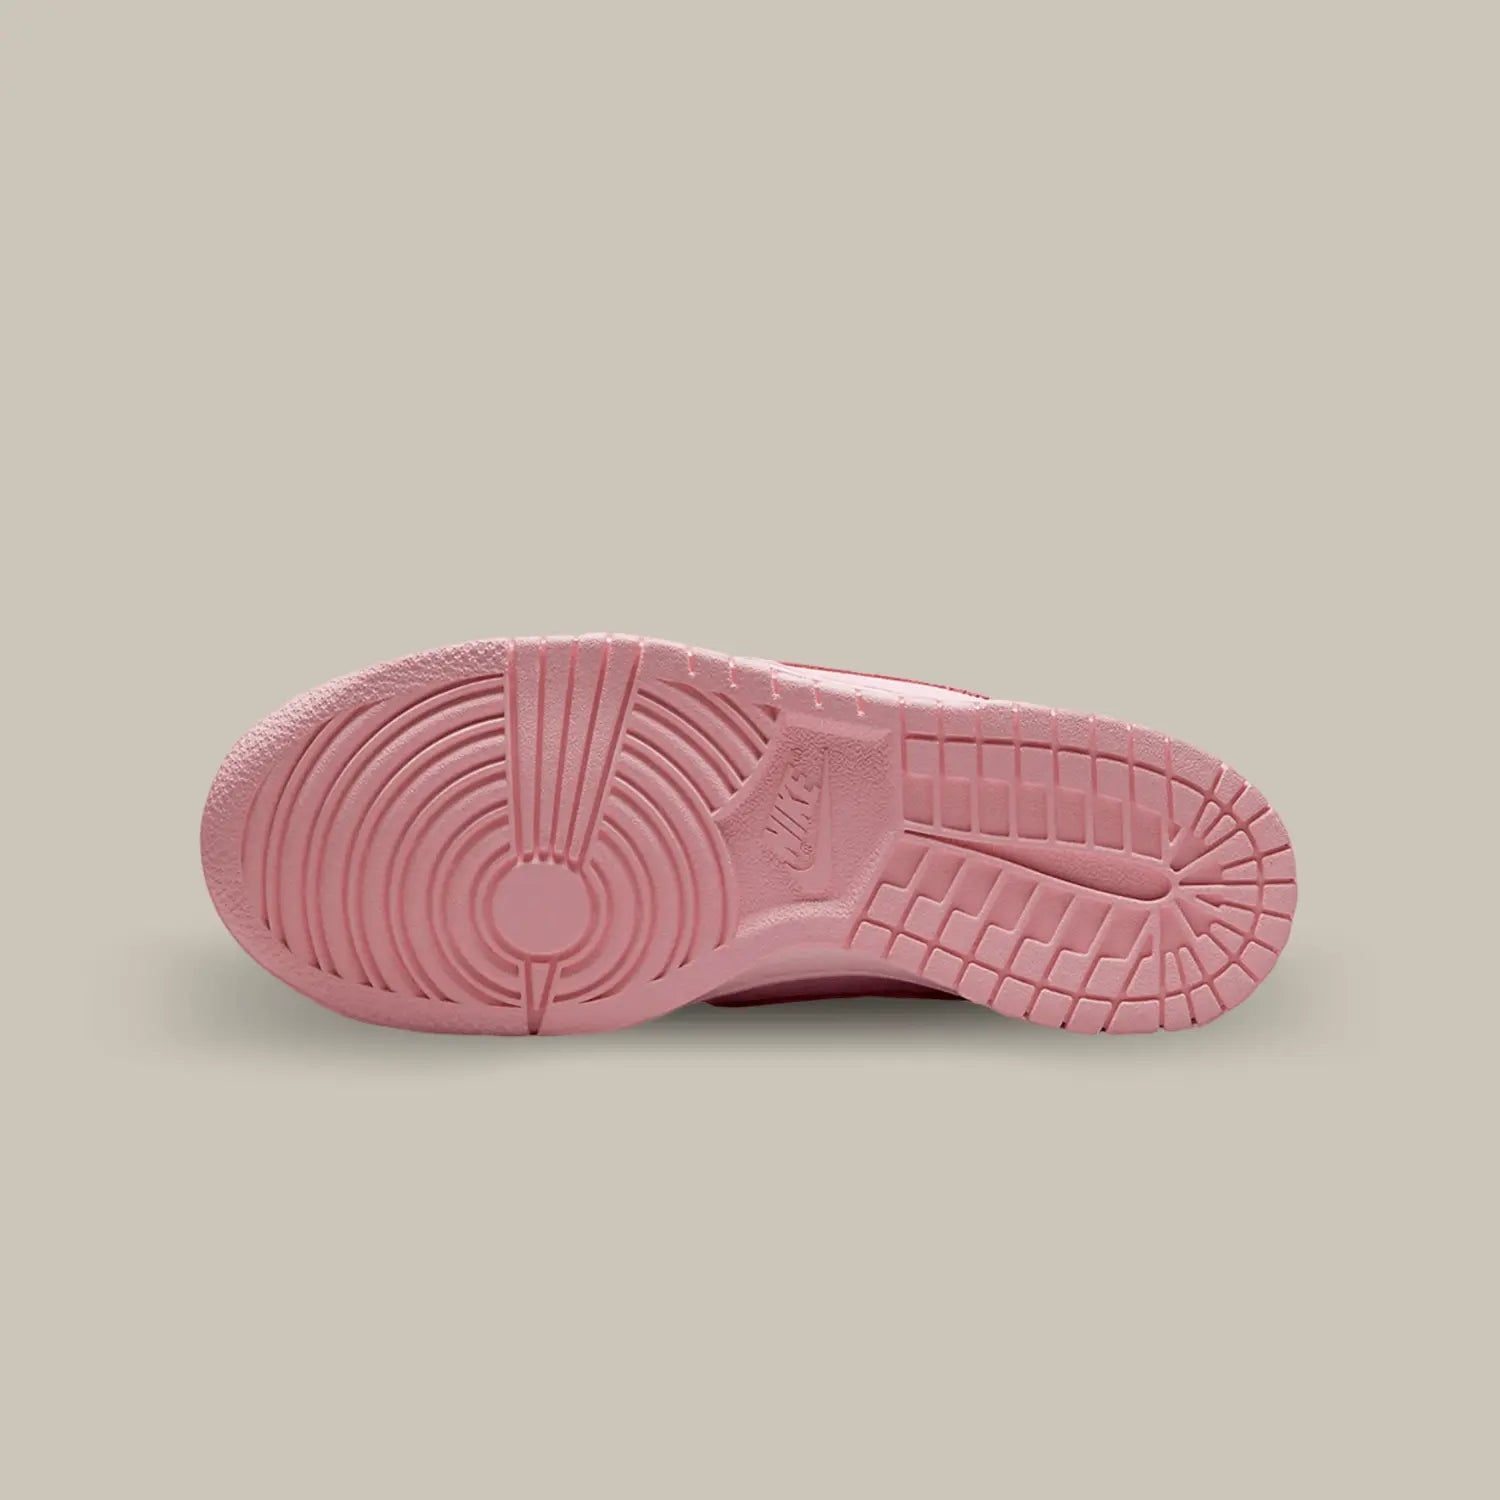 La semelle de la Nike Dunk Low Triple Pink de couleur rose.